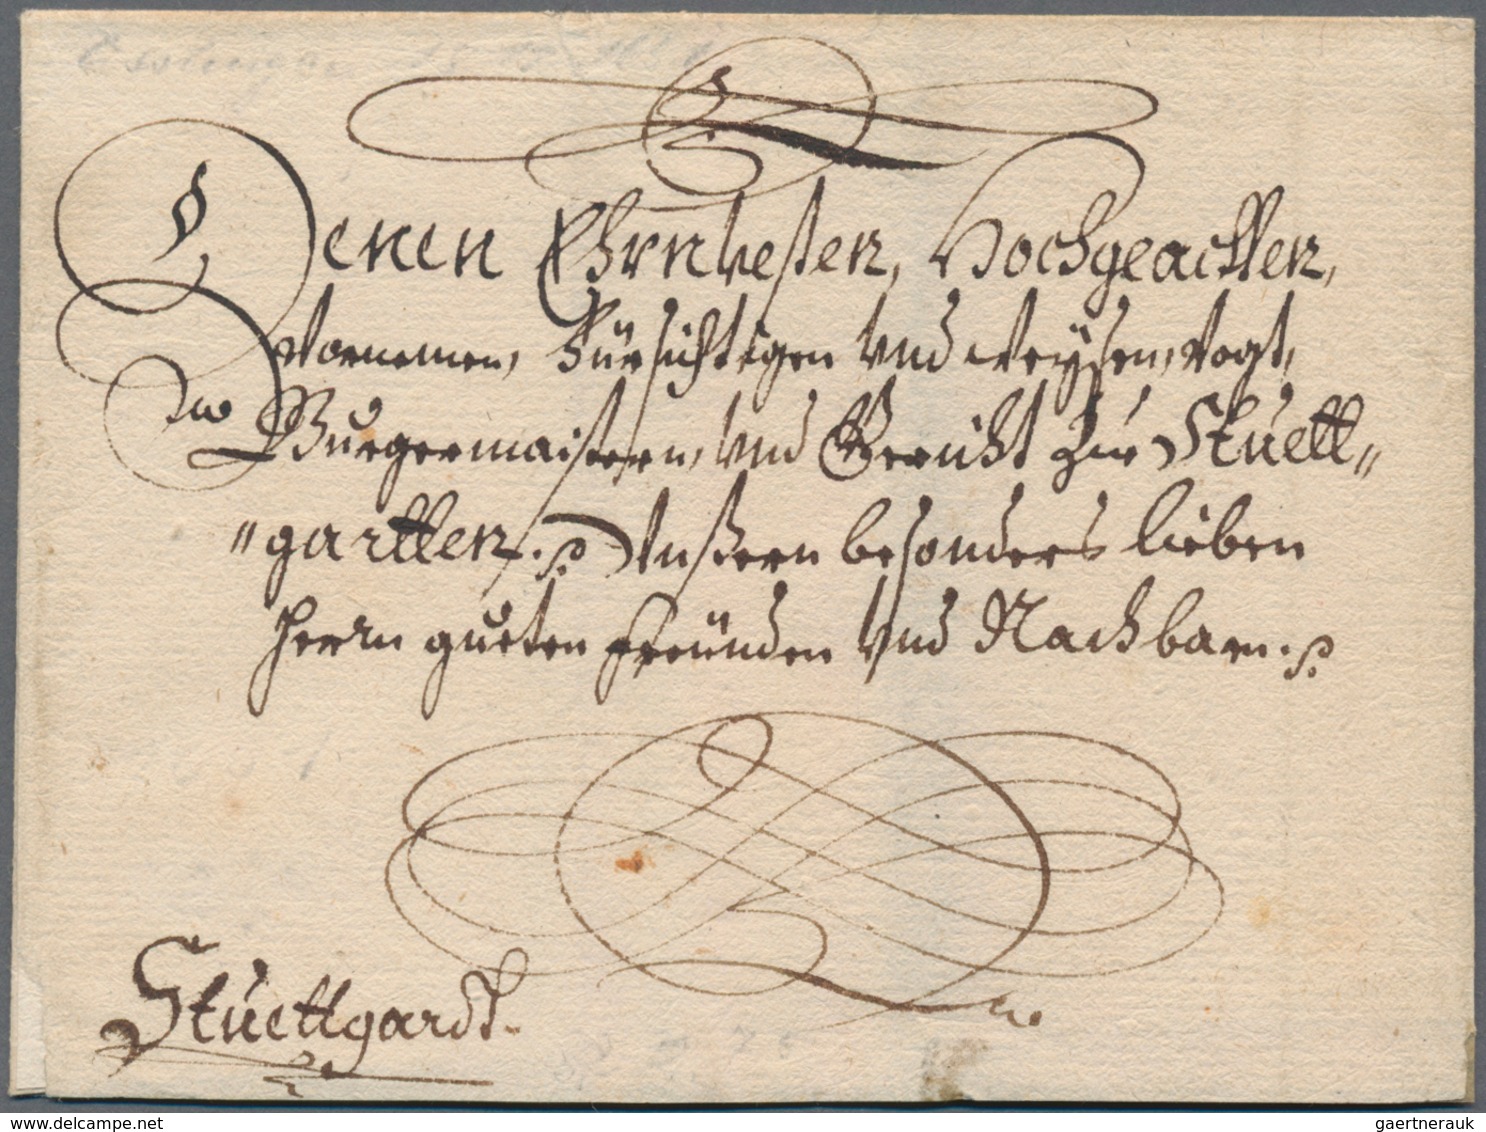 Württemberg - Marken und Briefe: 1642/1889, STUTTGART, umfassende Heimat-/Postgeschichte-Sammlung vo